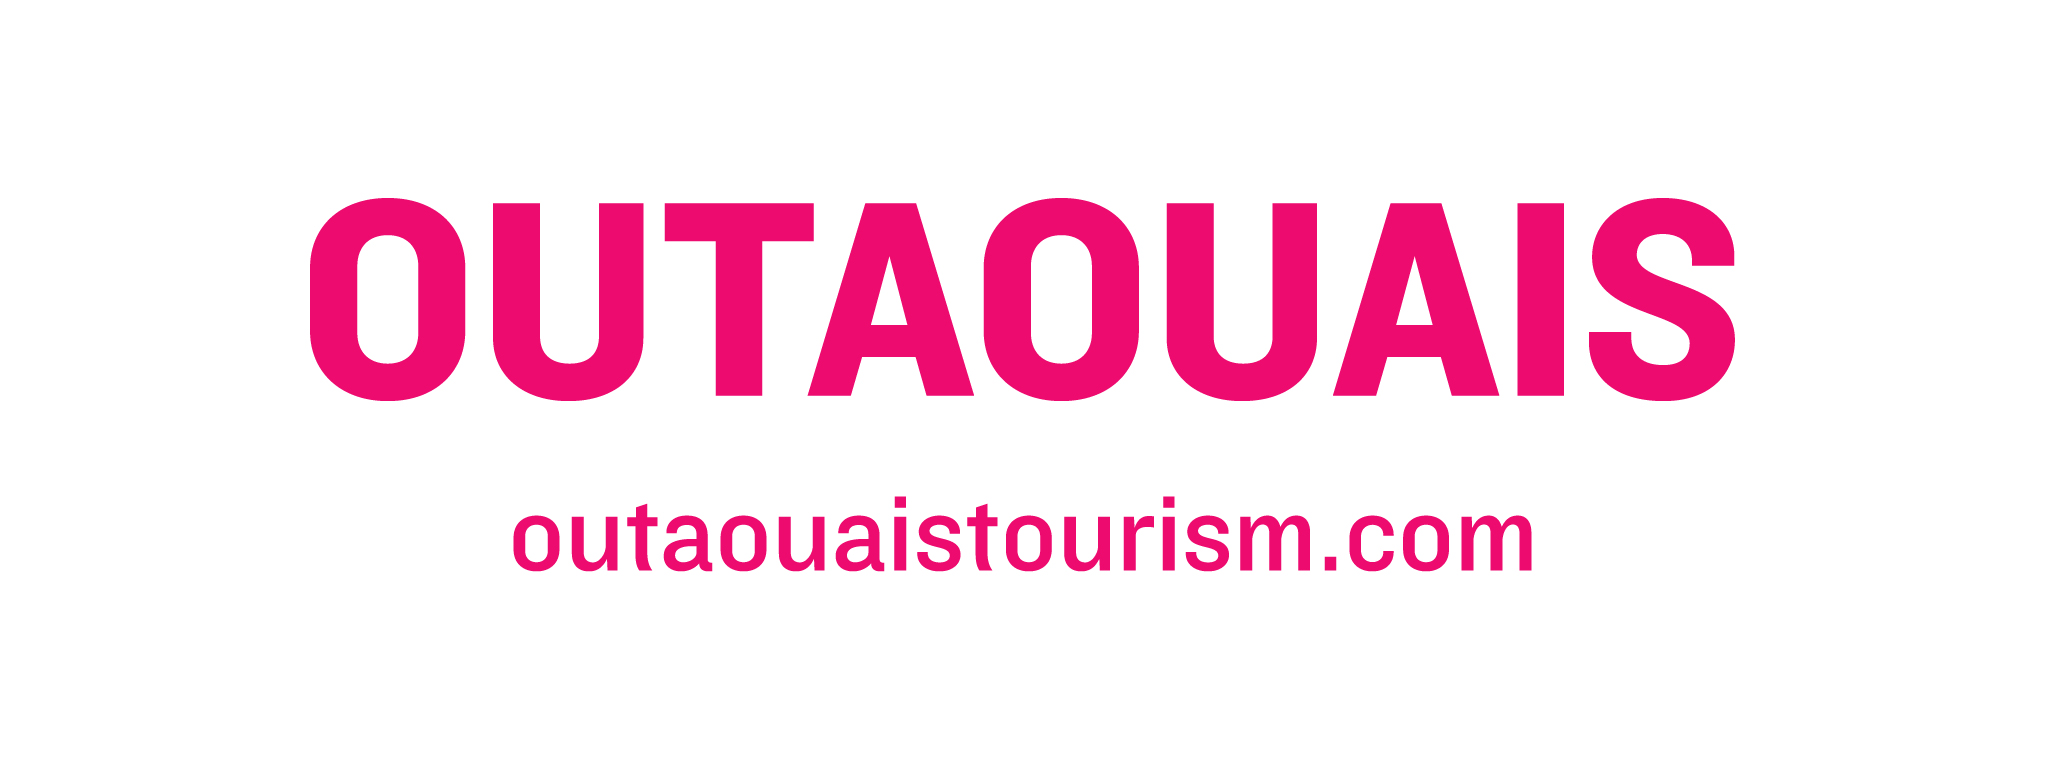 Tourism_Outaouias-Logo2018-coul-EN